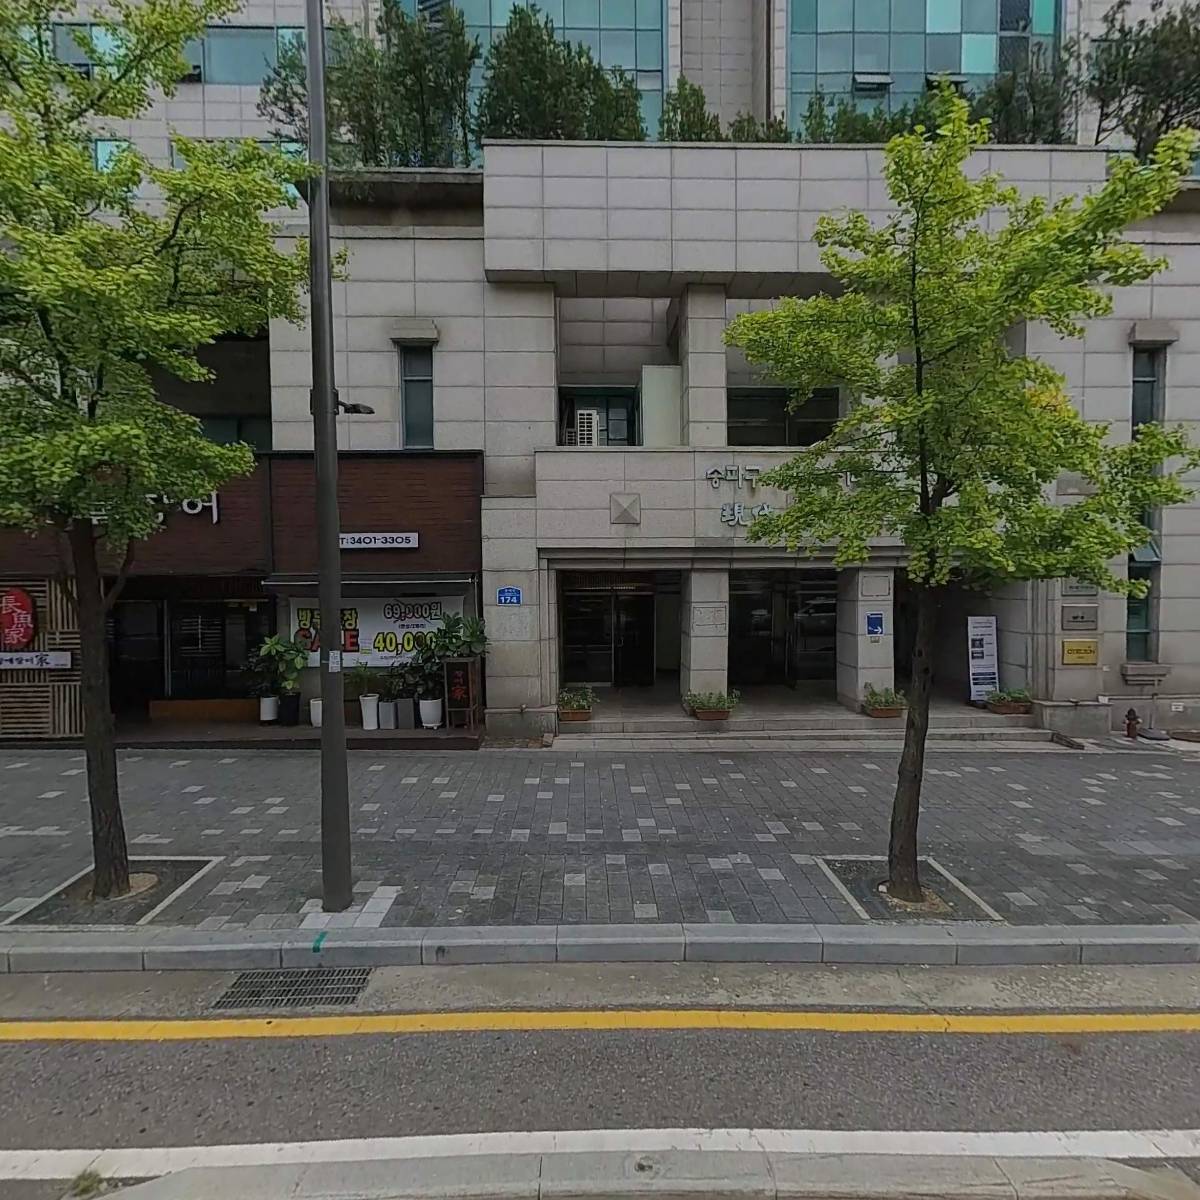 한국외식정보교육원 주식회사